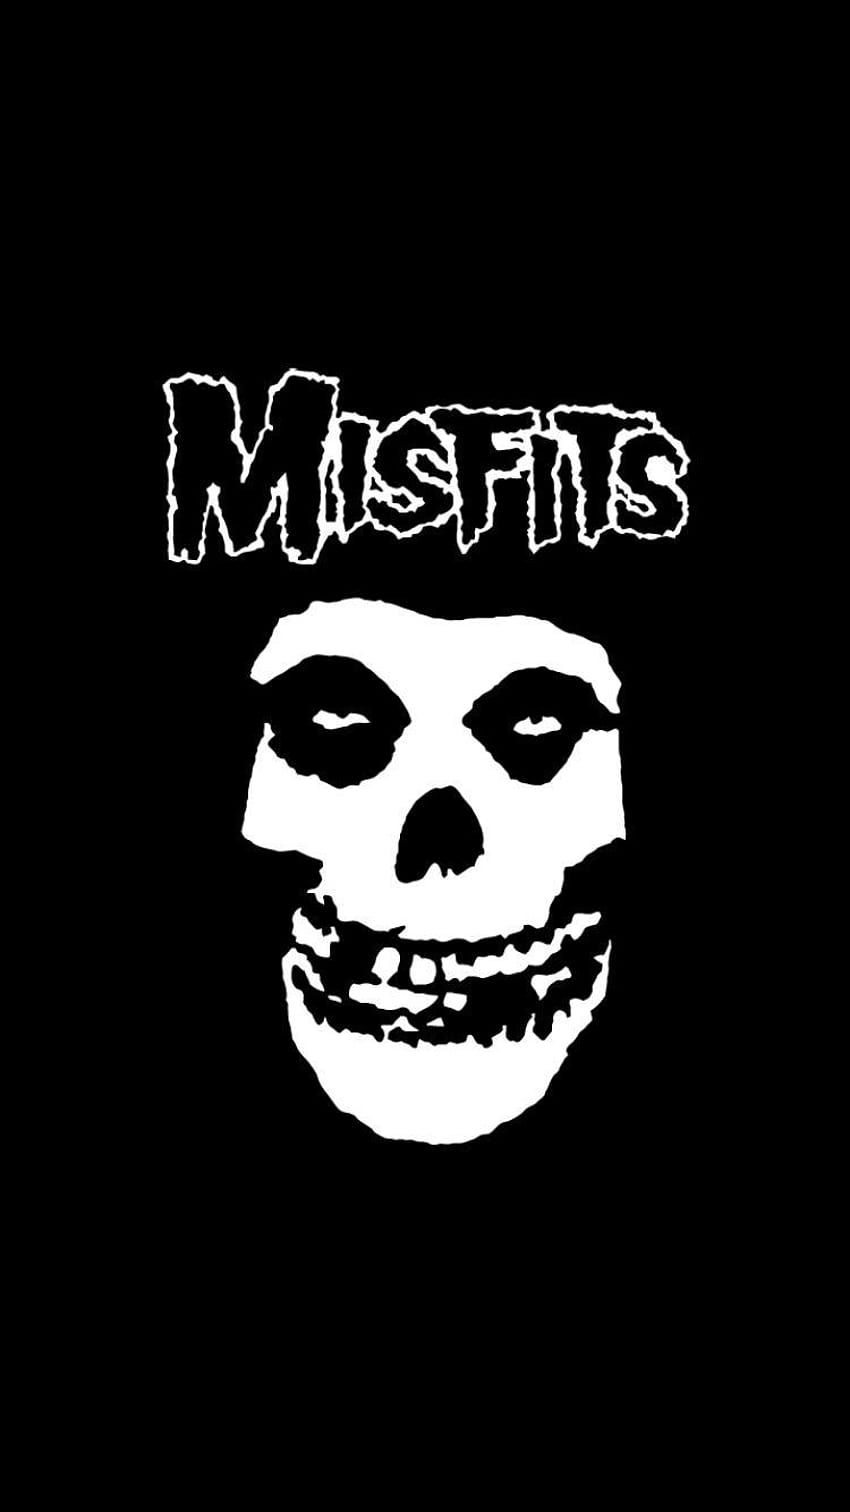 Música/Misfits, móvil de música metal fondo de pantalla del teléfono